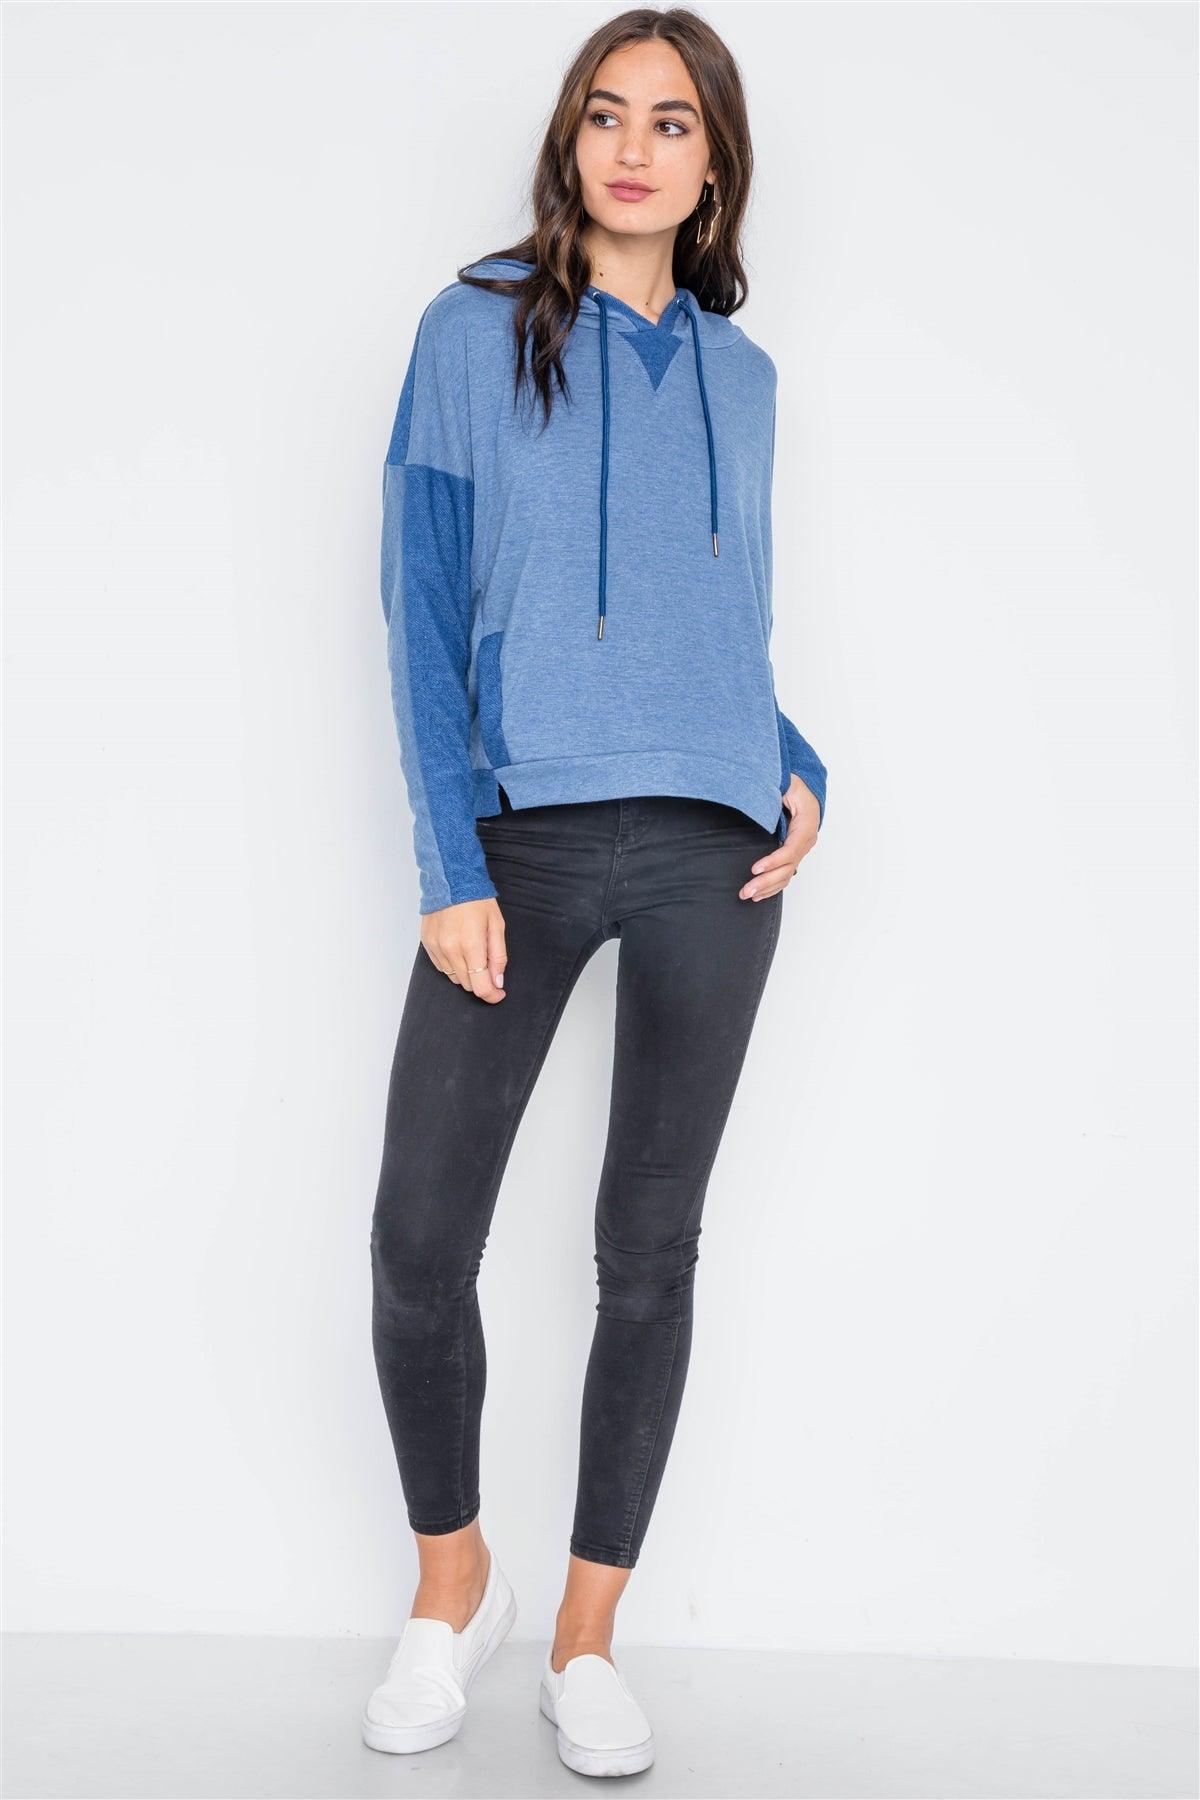 Blue Contrast Long Sleeves Hoodie Sweater /2-2-2